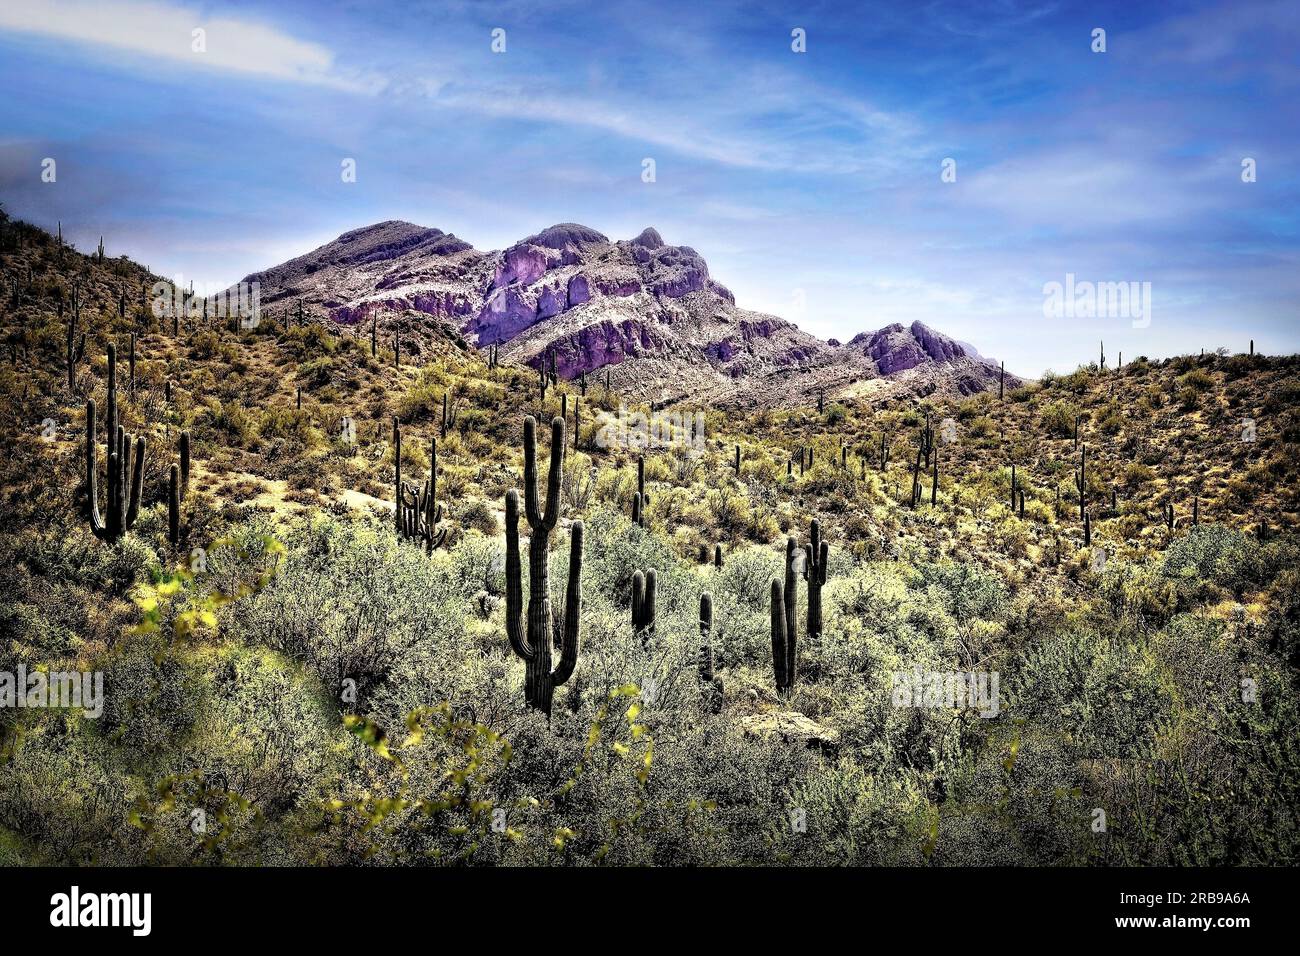 Les montagnes de la superstition s'élever au-dessus dans le désert de Sonora de l'Arizona. Banque D'Images